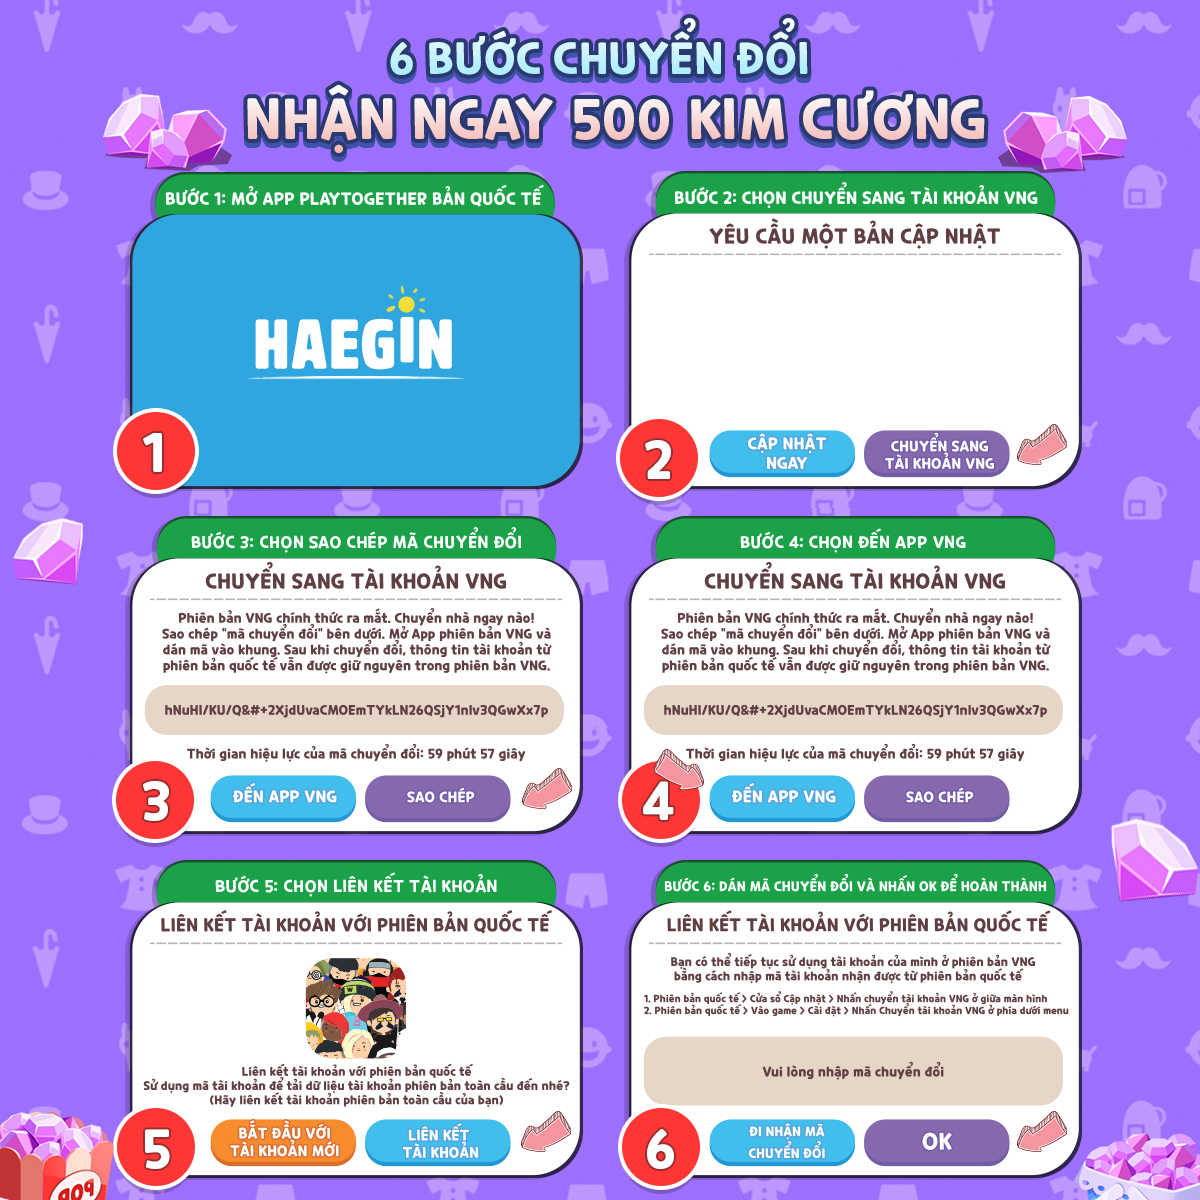 Play Together VNG: Nhận 500 Kim Cương sau 6 bước “chuyển nhà” về Việt Nam